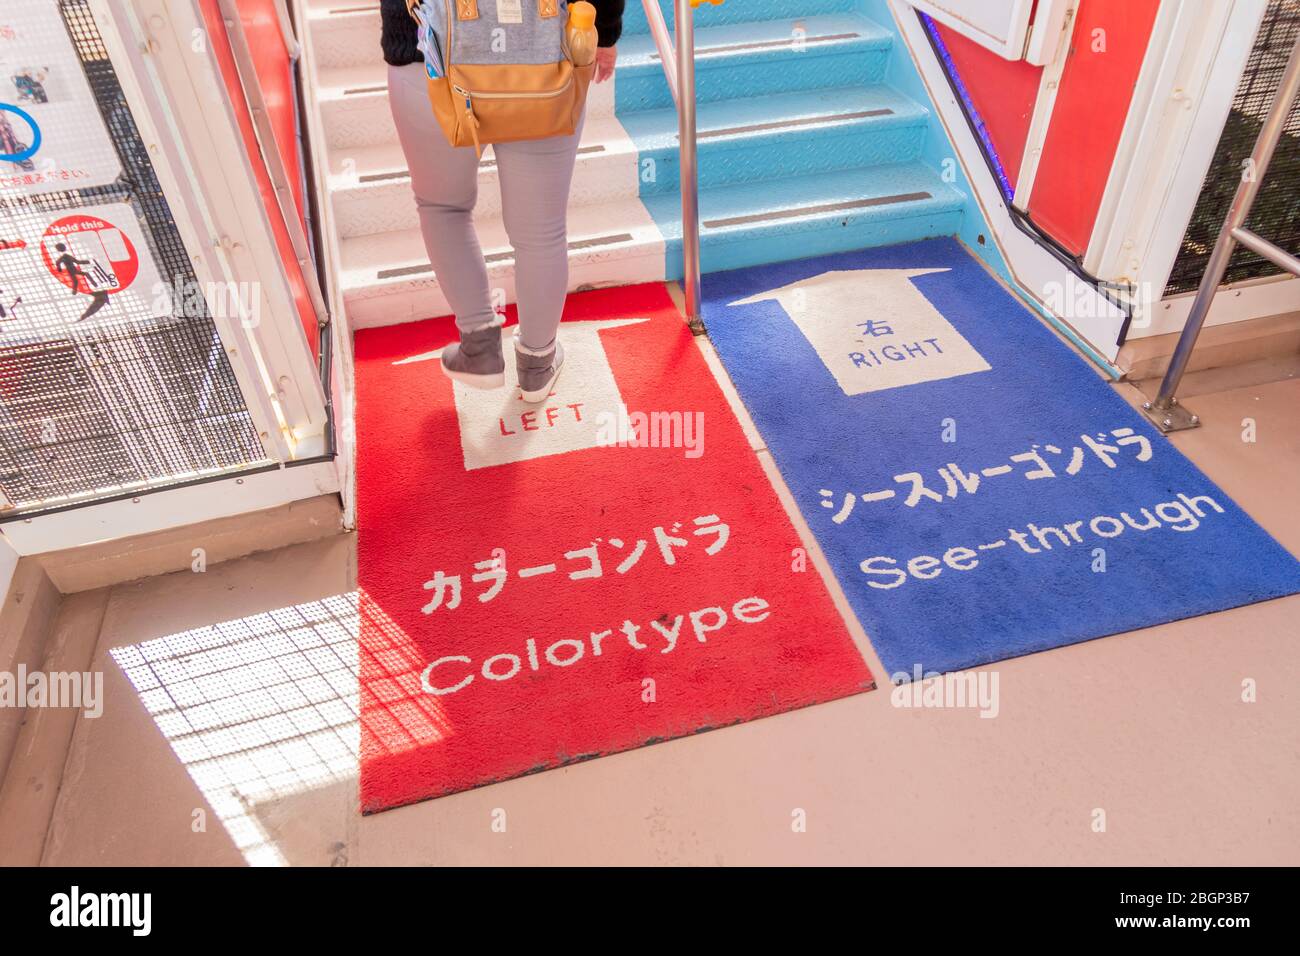 L'ingresso della ruota panoramica gigante a daiba ha colori diversi rispetto al tipo di gondola separata per i suoi passeggeri. Tokyo, Giappone febbraio 8,2020 Foto Stock